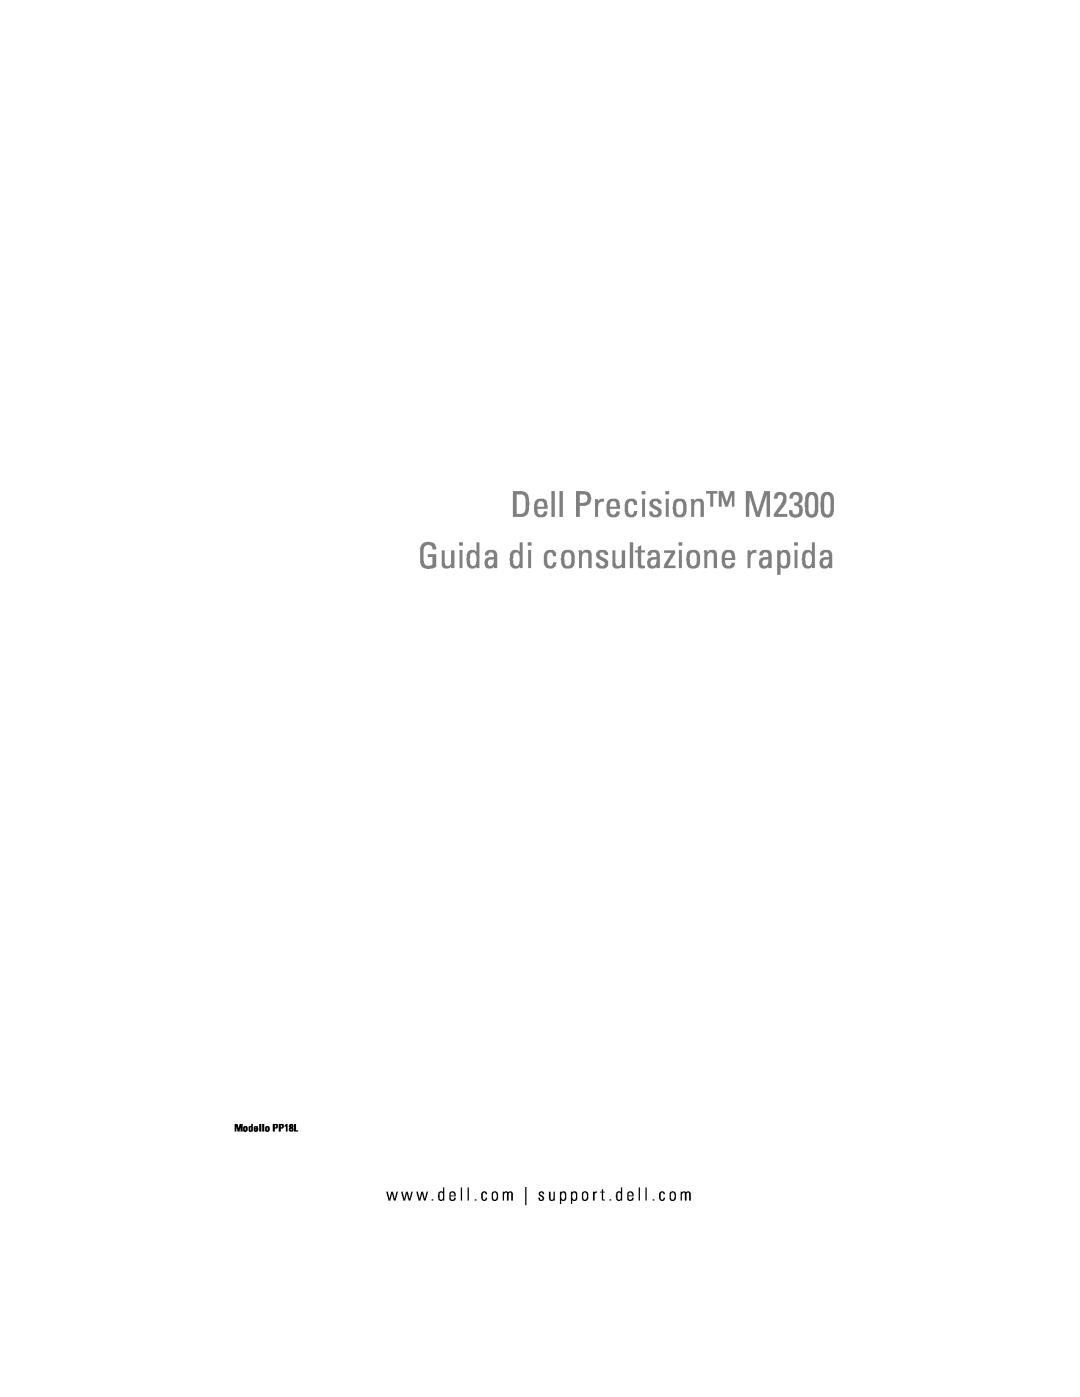 Dell manual Dell Precision M2300 Guida di consultazione rapida, Modello PP18L 